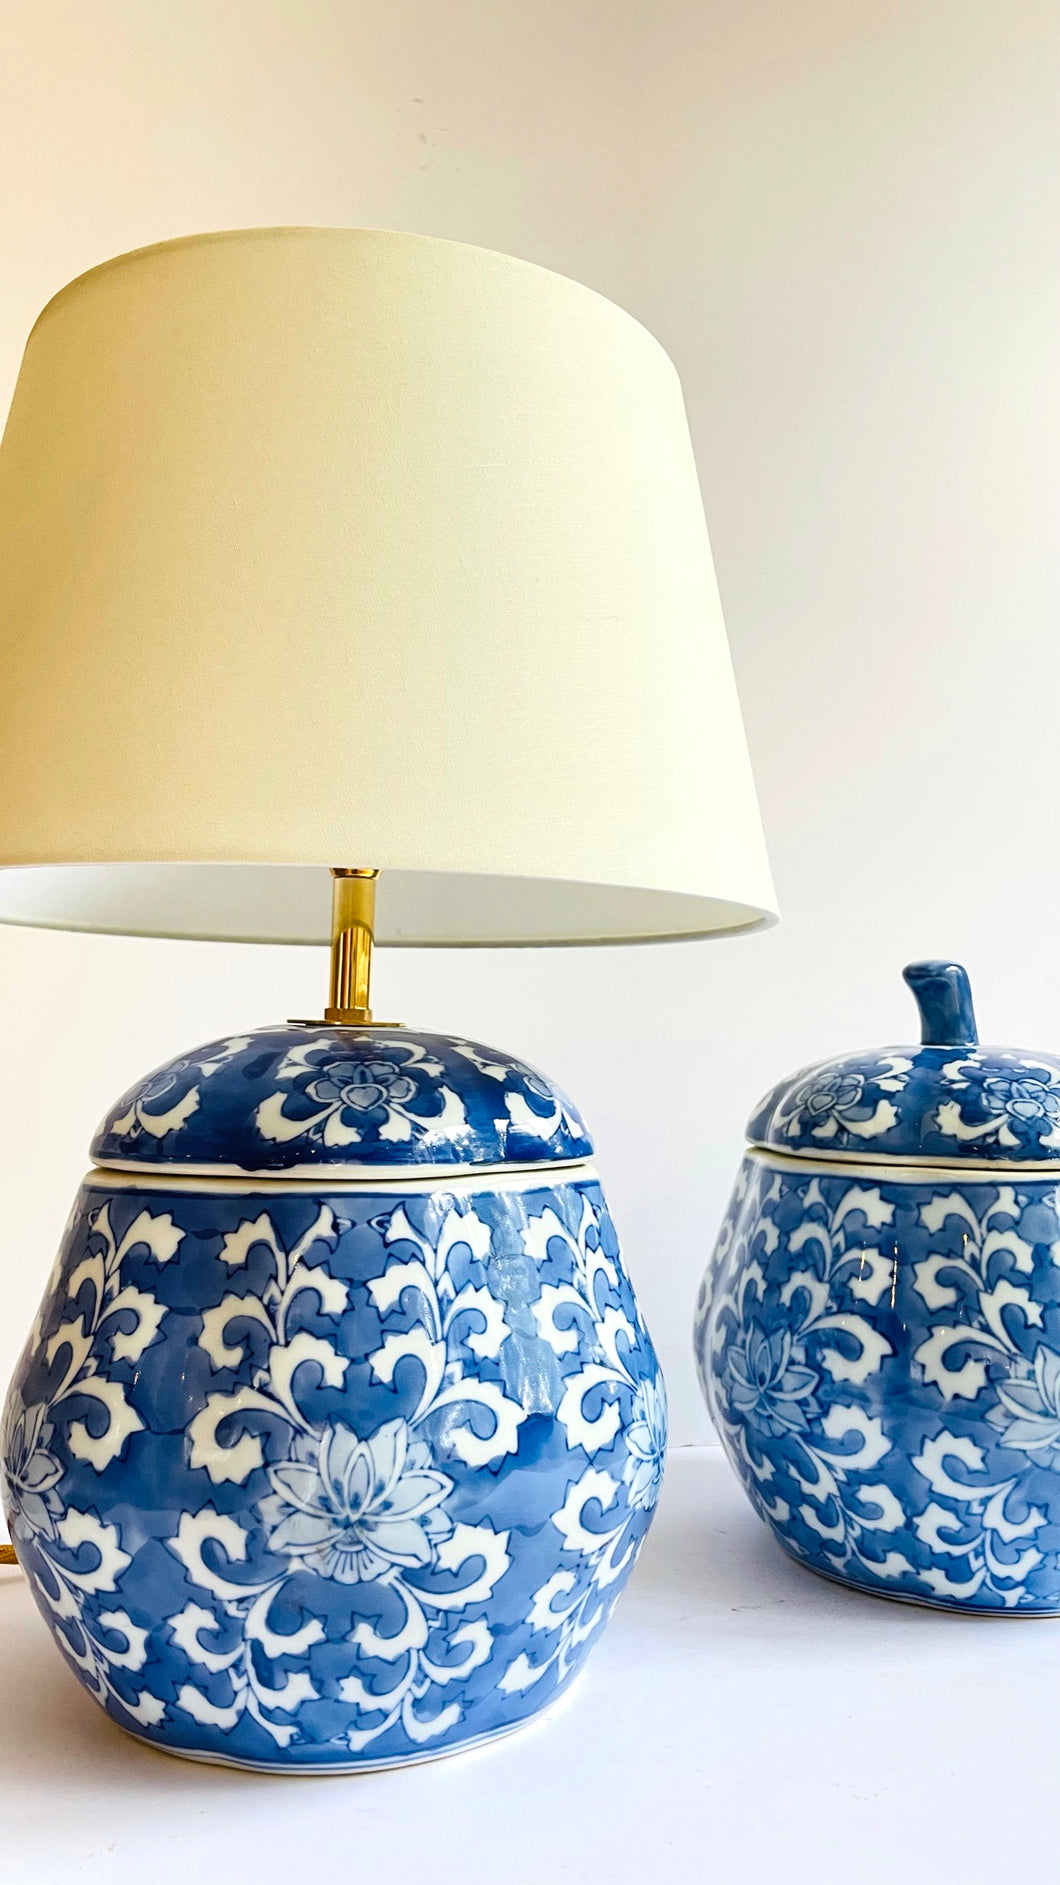 Antique Porcelain Lamp - pre order for mid Oct